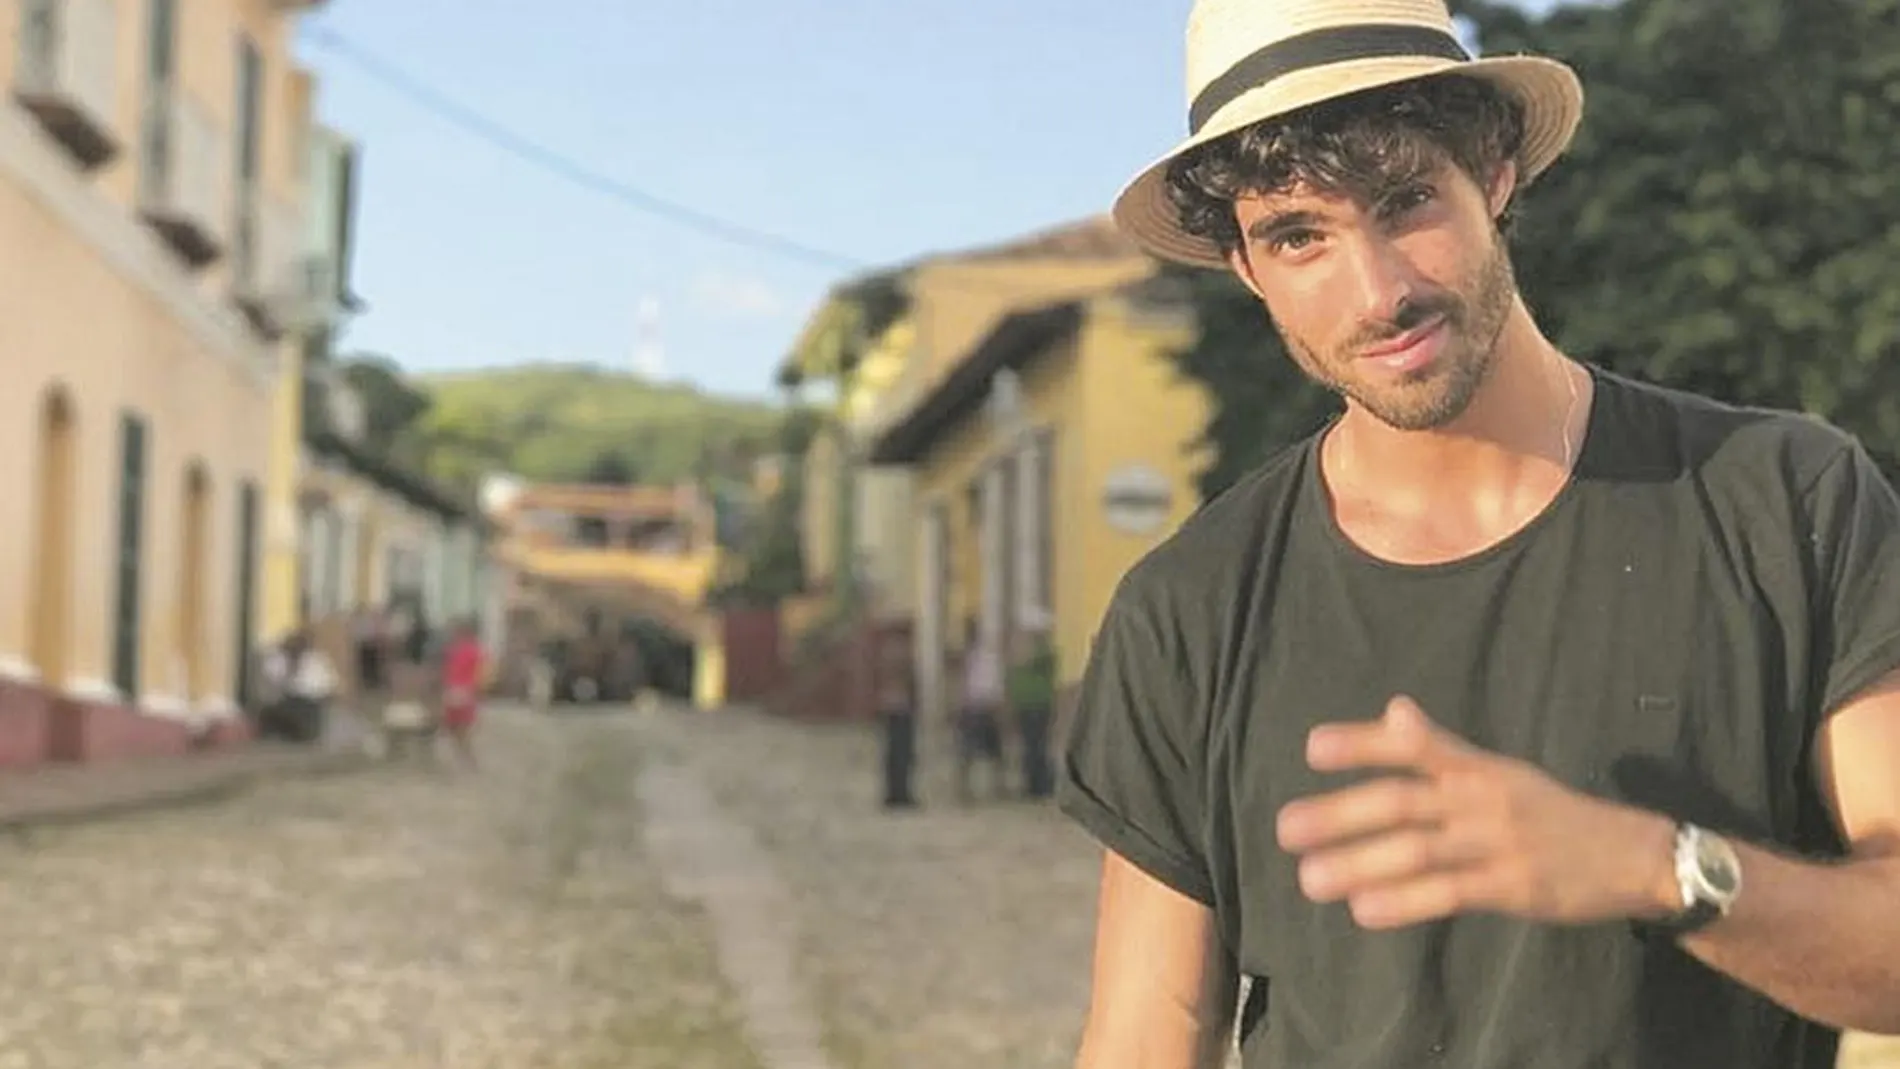 El actor y modelo no duda en ponerse delante de las cámaras en Cuba para tener recuerdos de su tierra